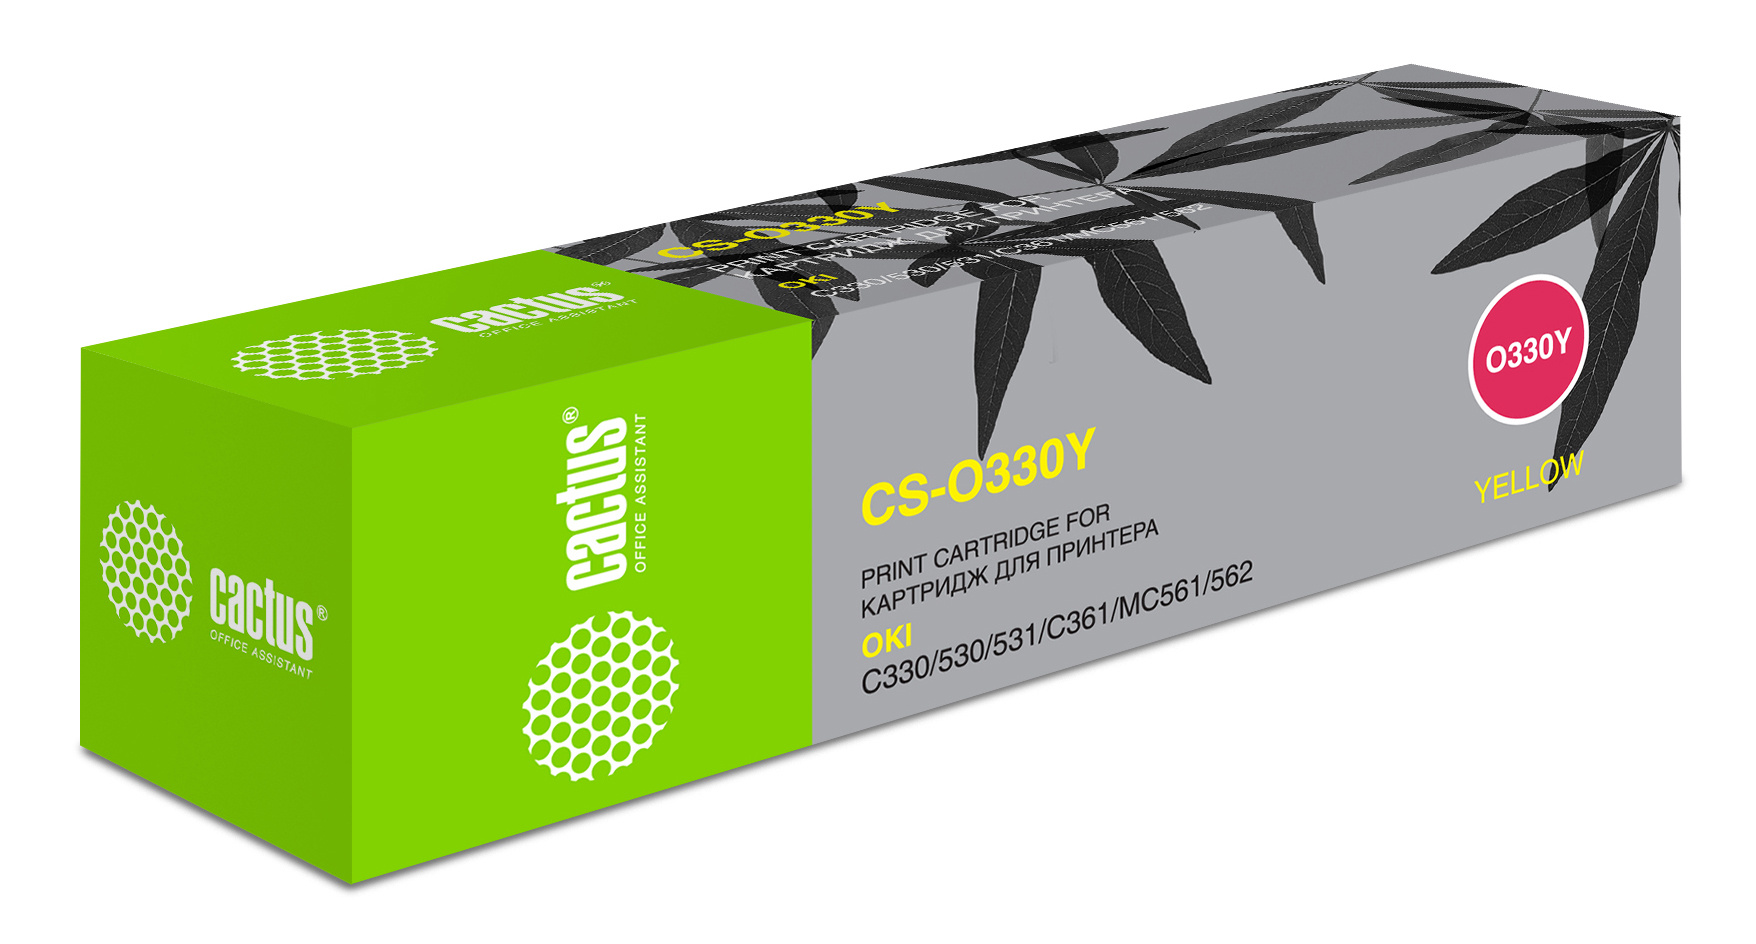 Картридж лазерный Cactus 44469714 CS-O330Y желтый (3000стр.) для Oki C330/C530 тонер картридж cactus cs o330m пурпурный для oki c330 c530 3000стр